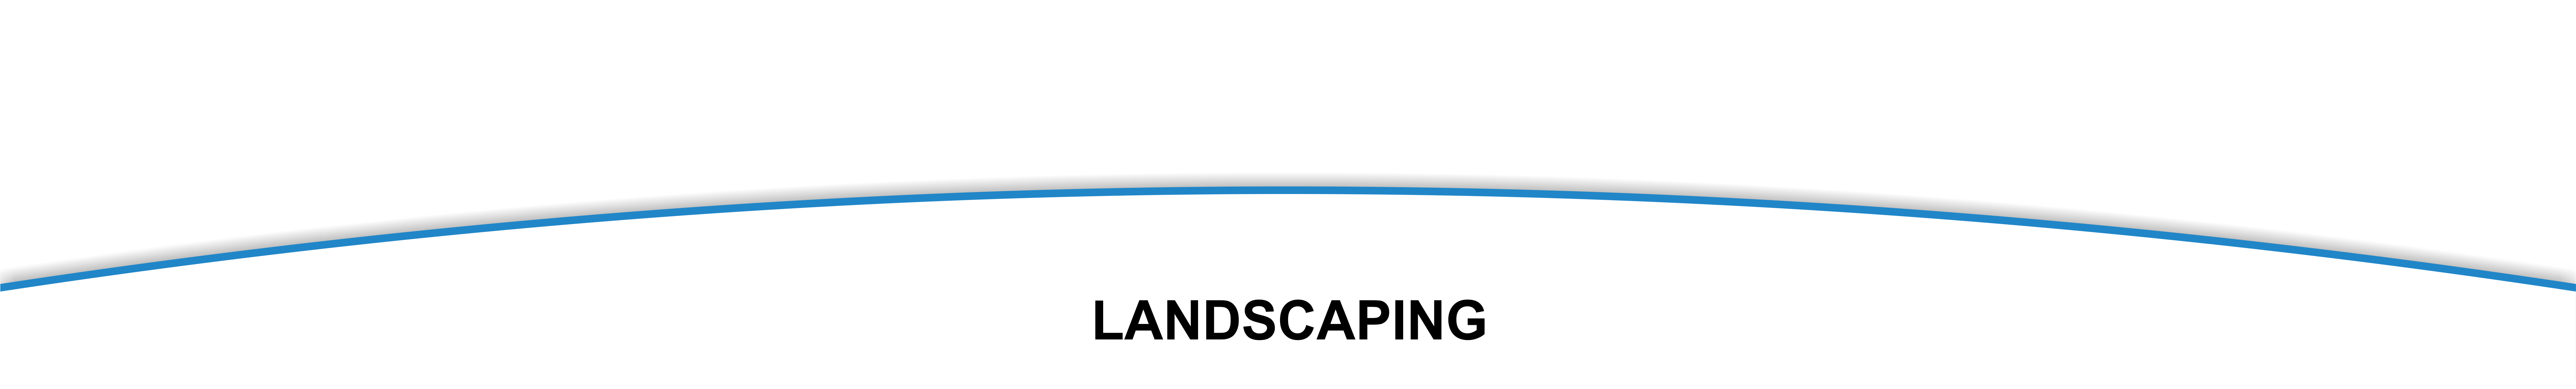 landscaping_header